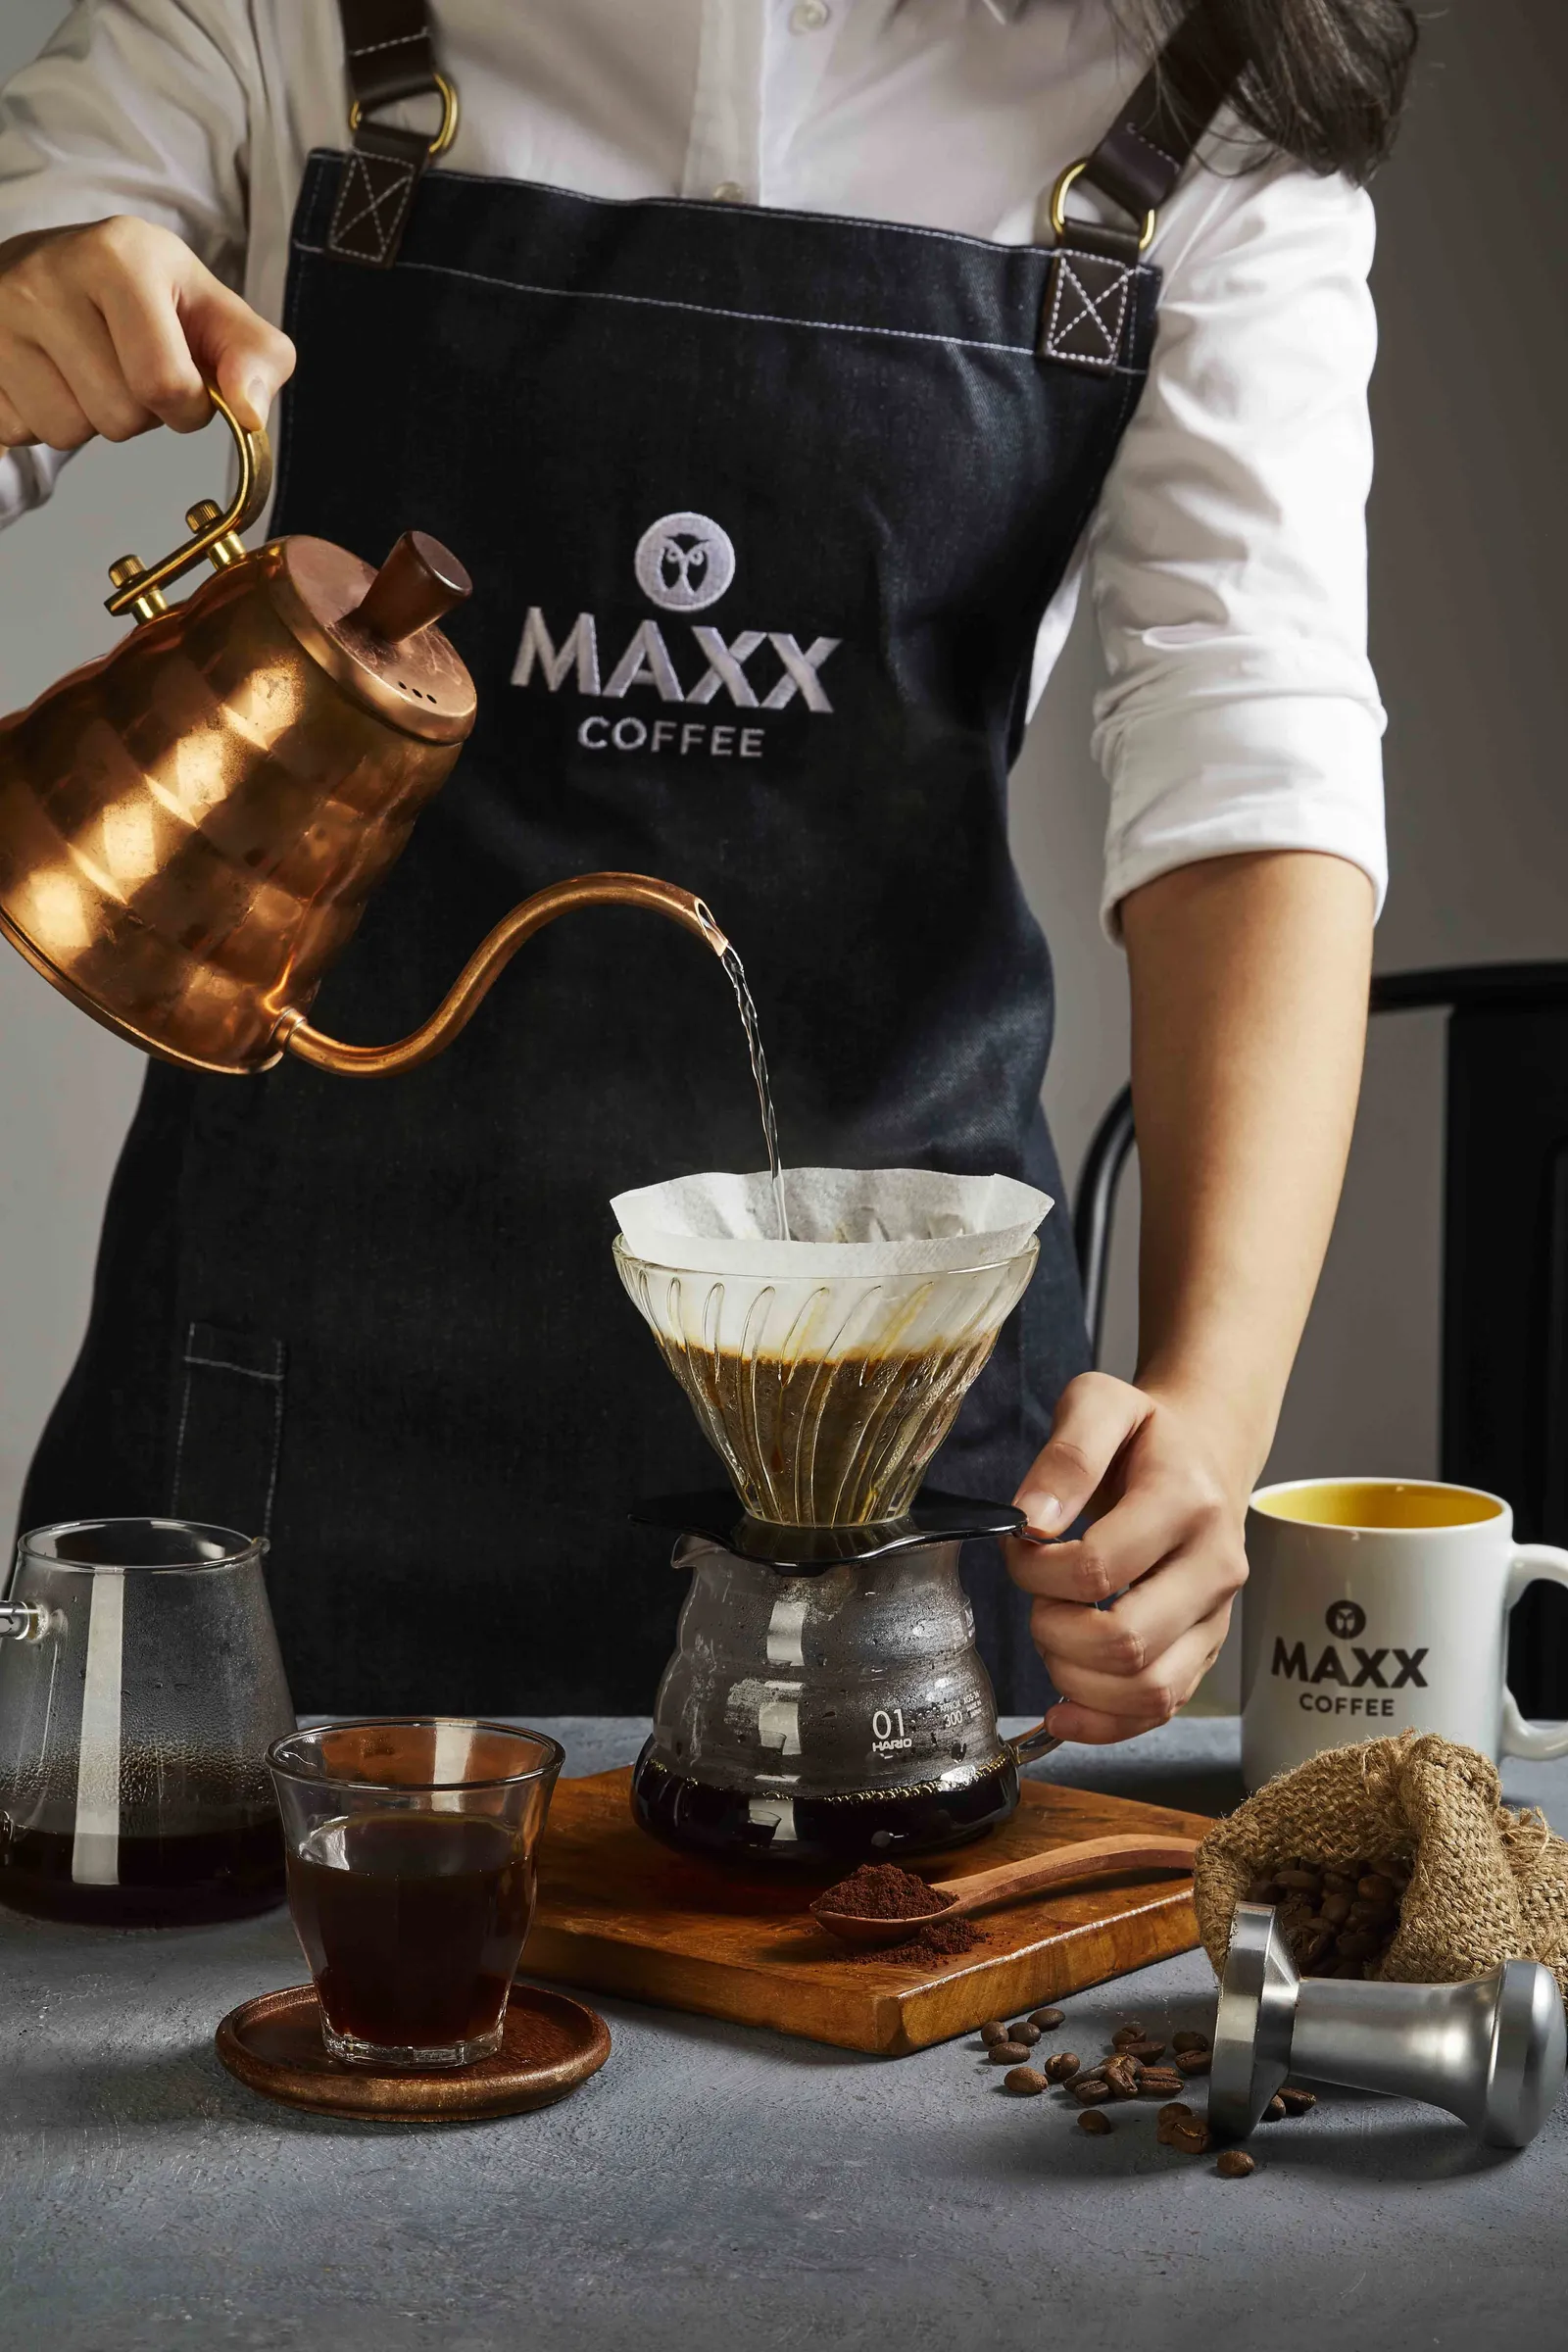 MAXX
Coffee, Lebih dari Coffee Shop Biasa